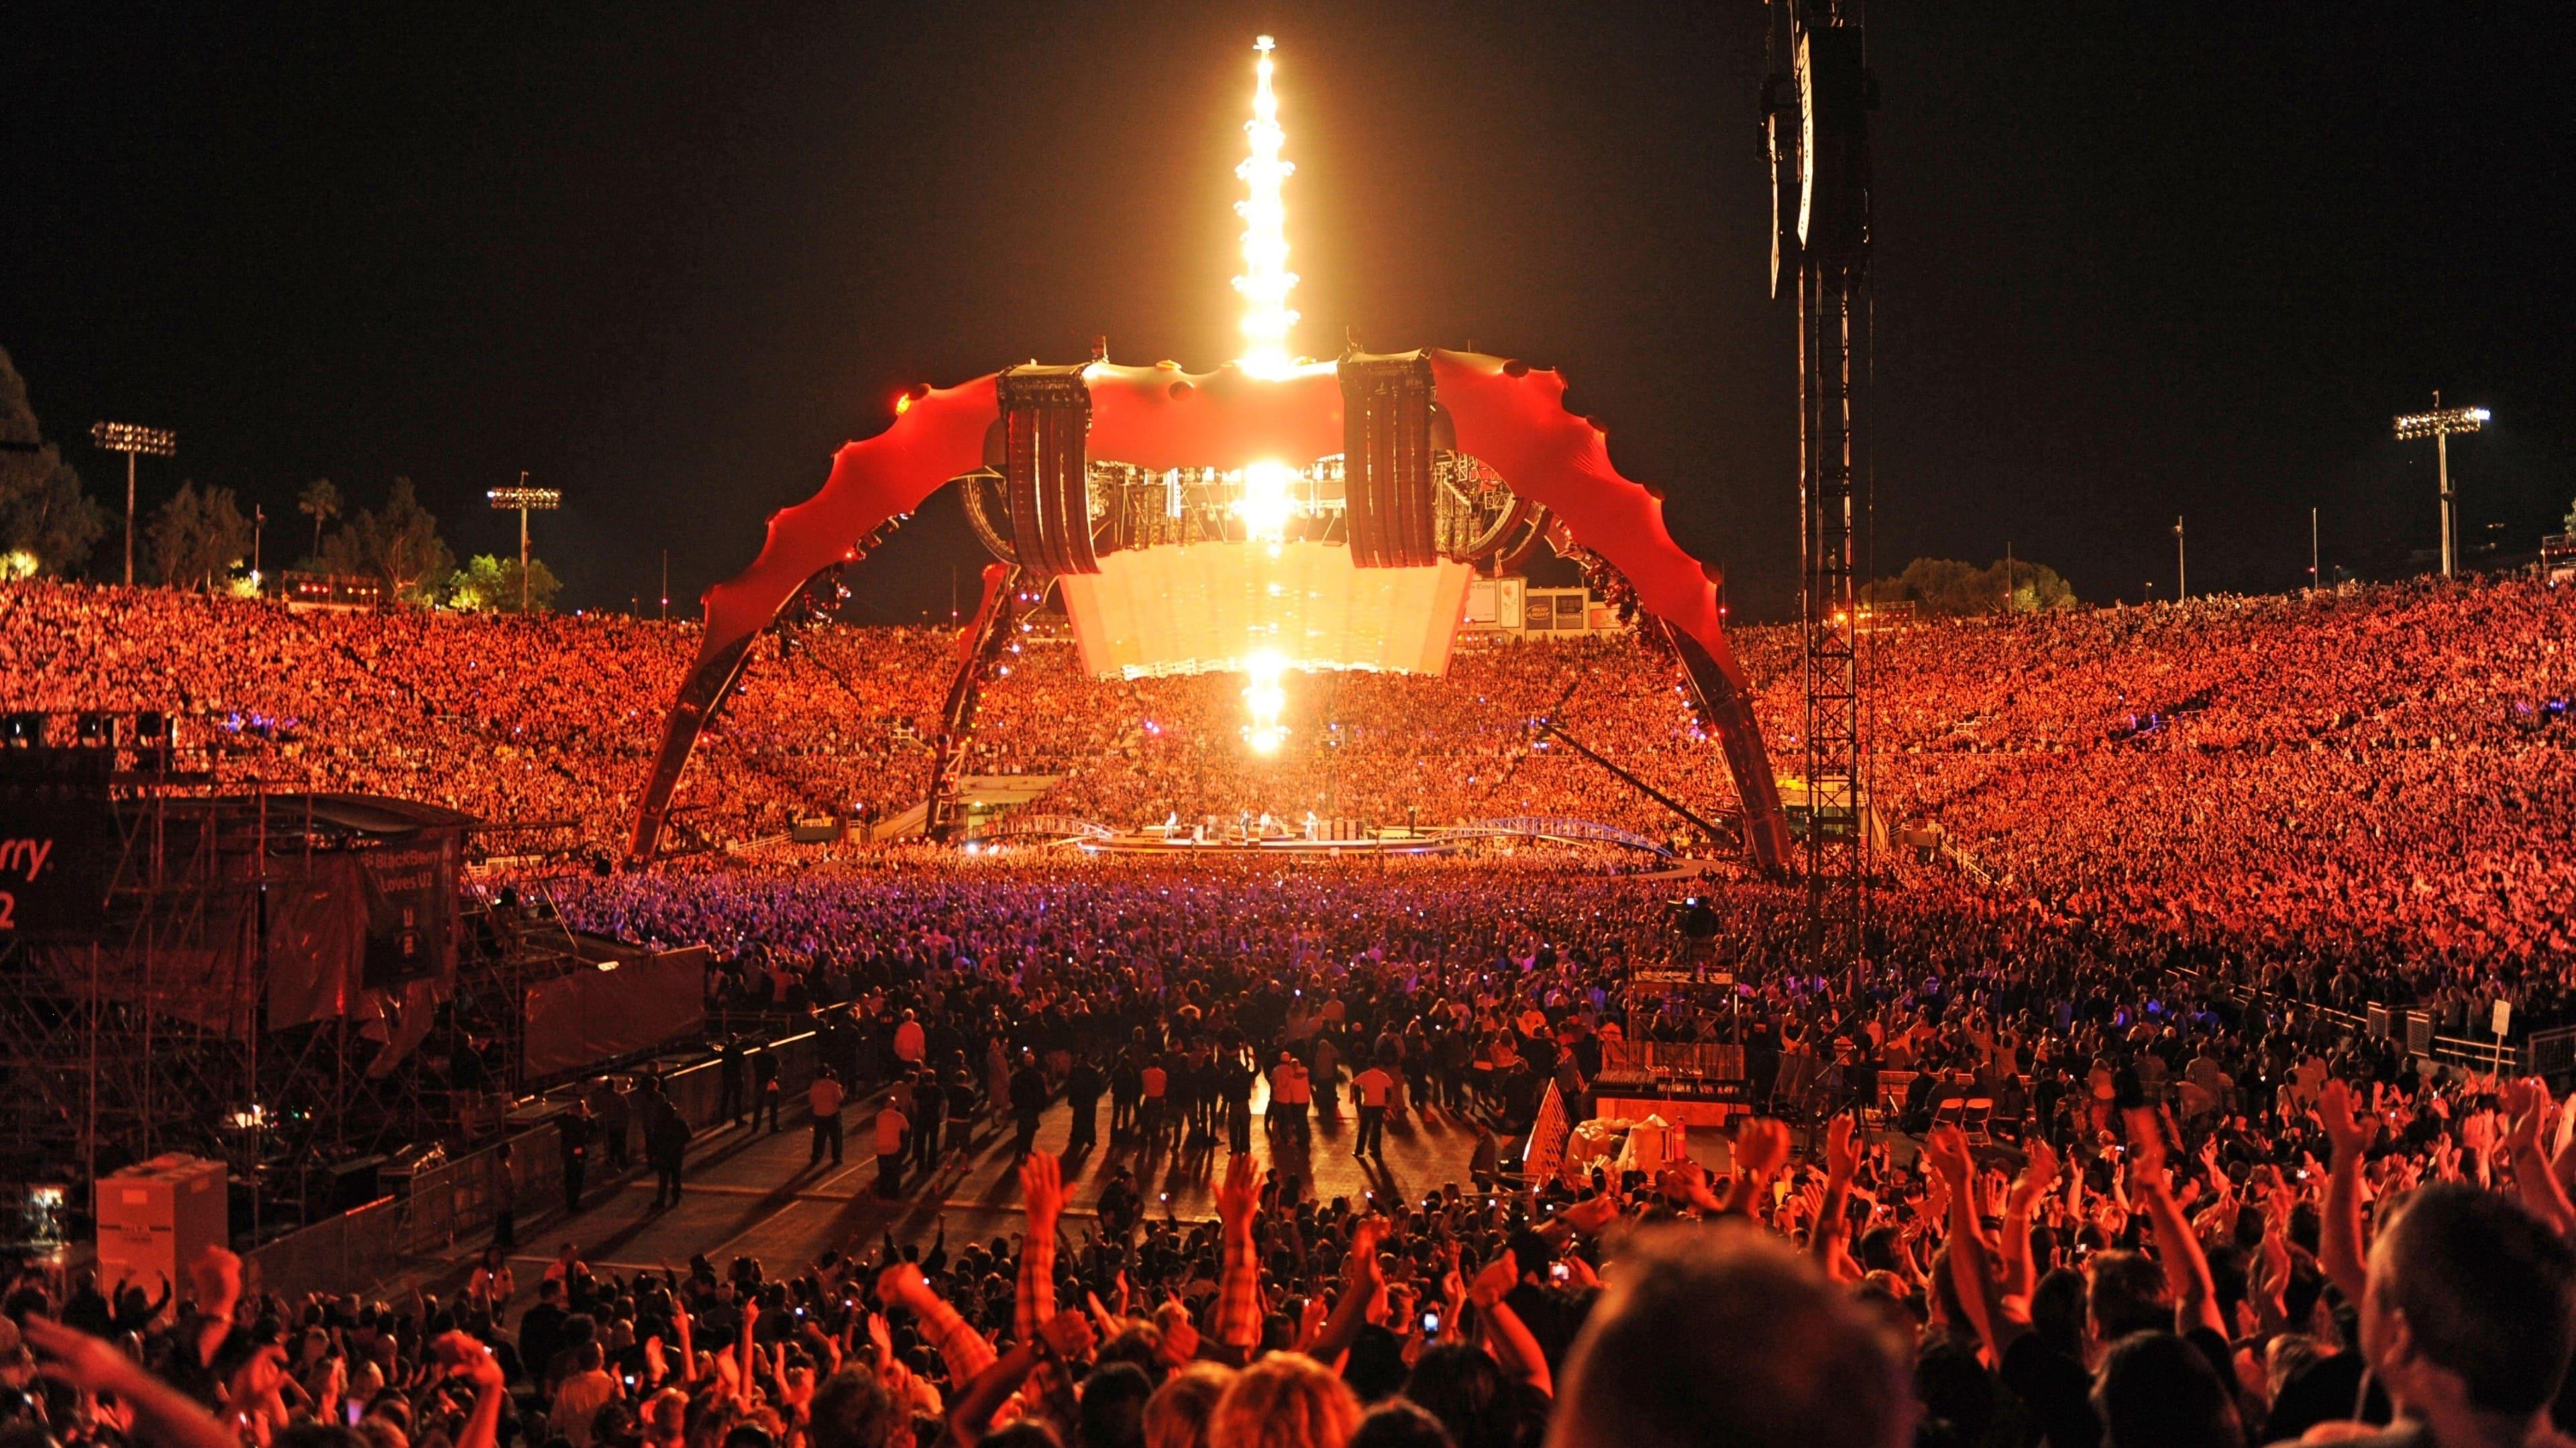 U2: 360° at the Rose Bowl backdrop